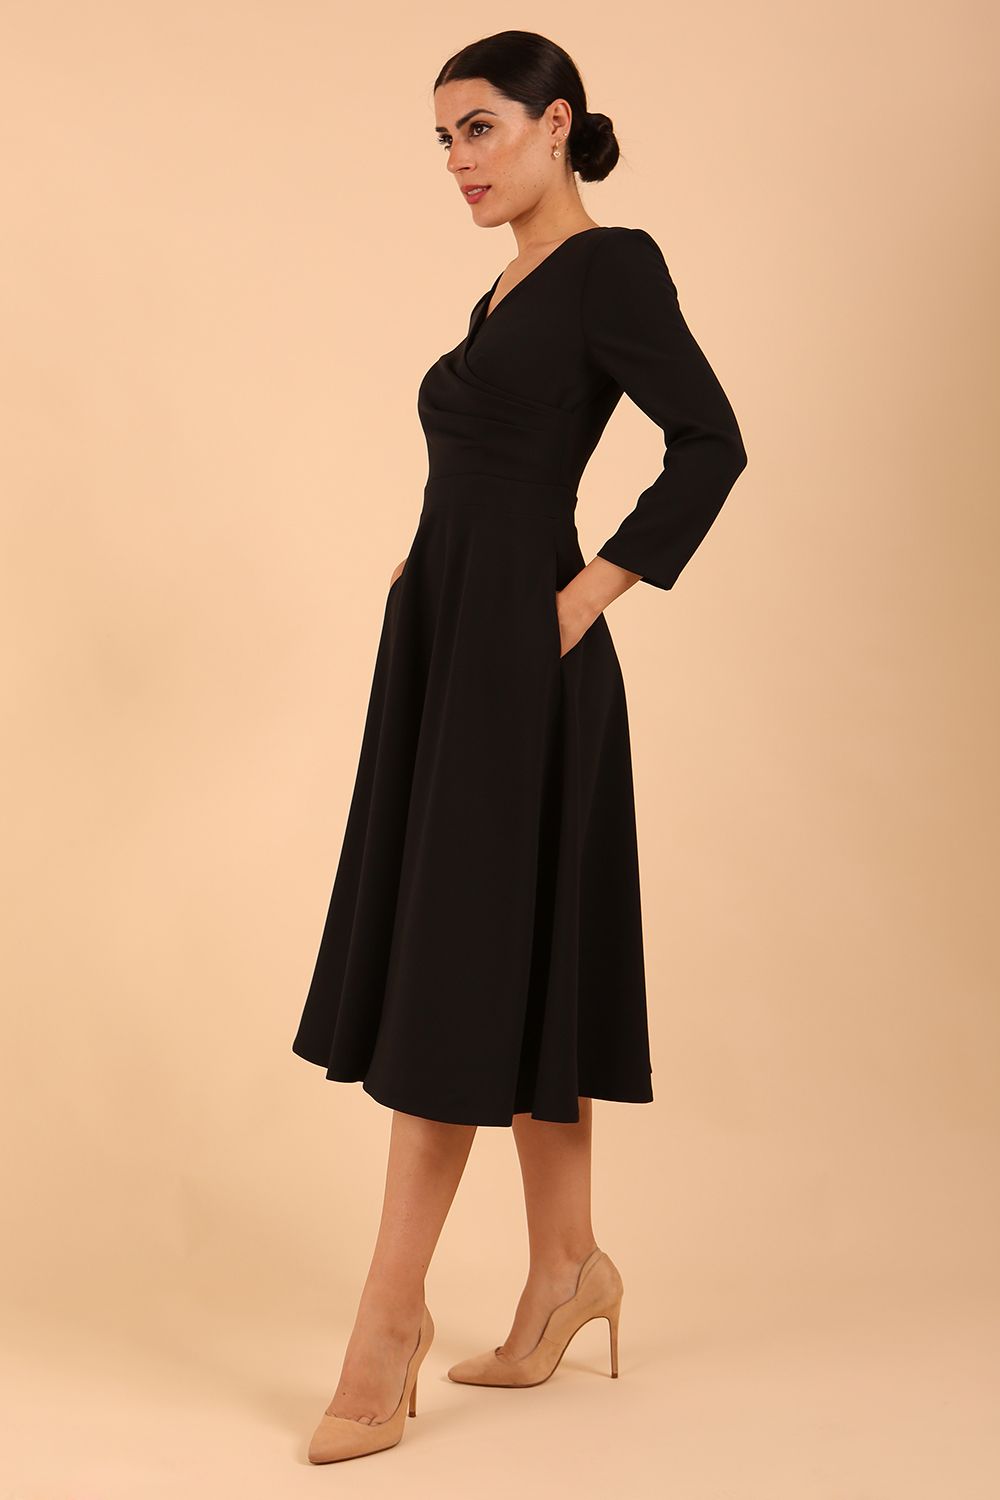 Model wearing diva catwalk Kate 3/4 Length Sleeve A-Line Swing Dress in Black front  side